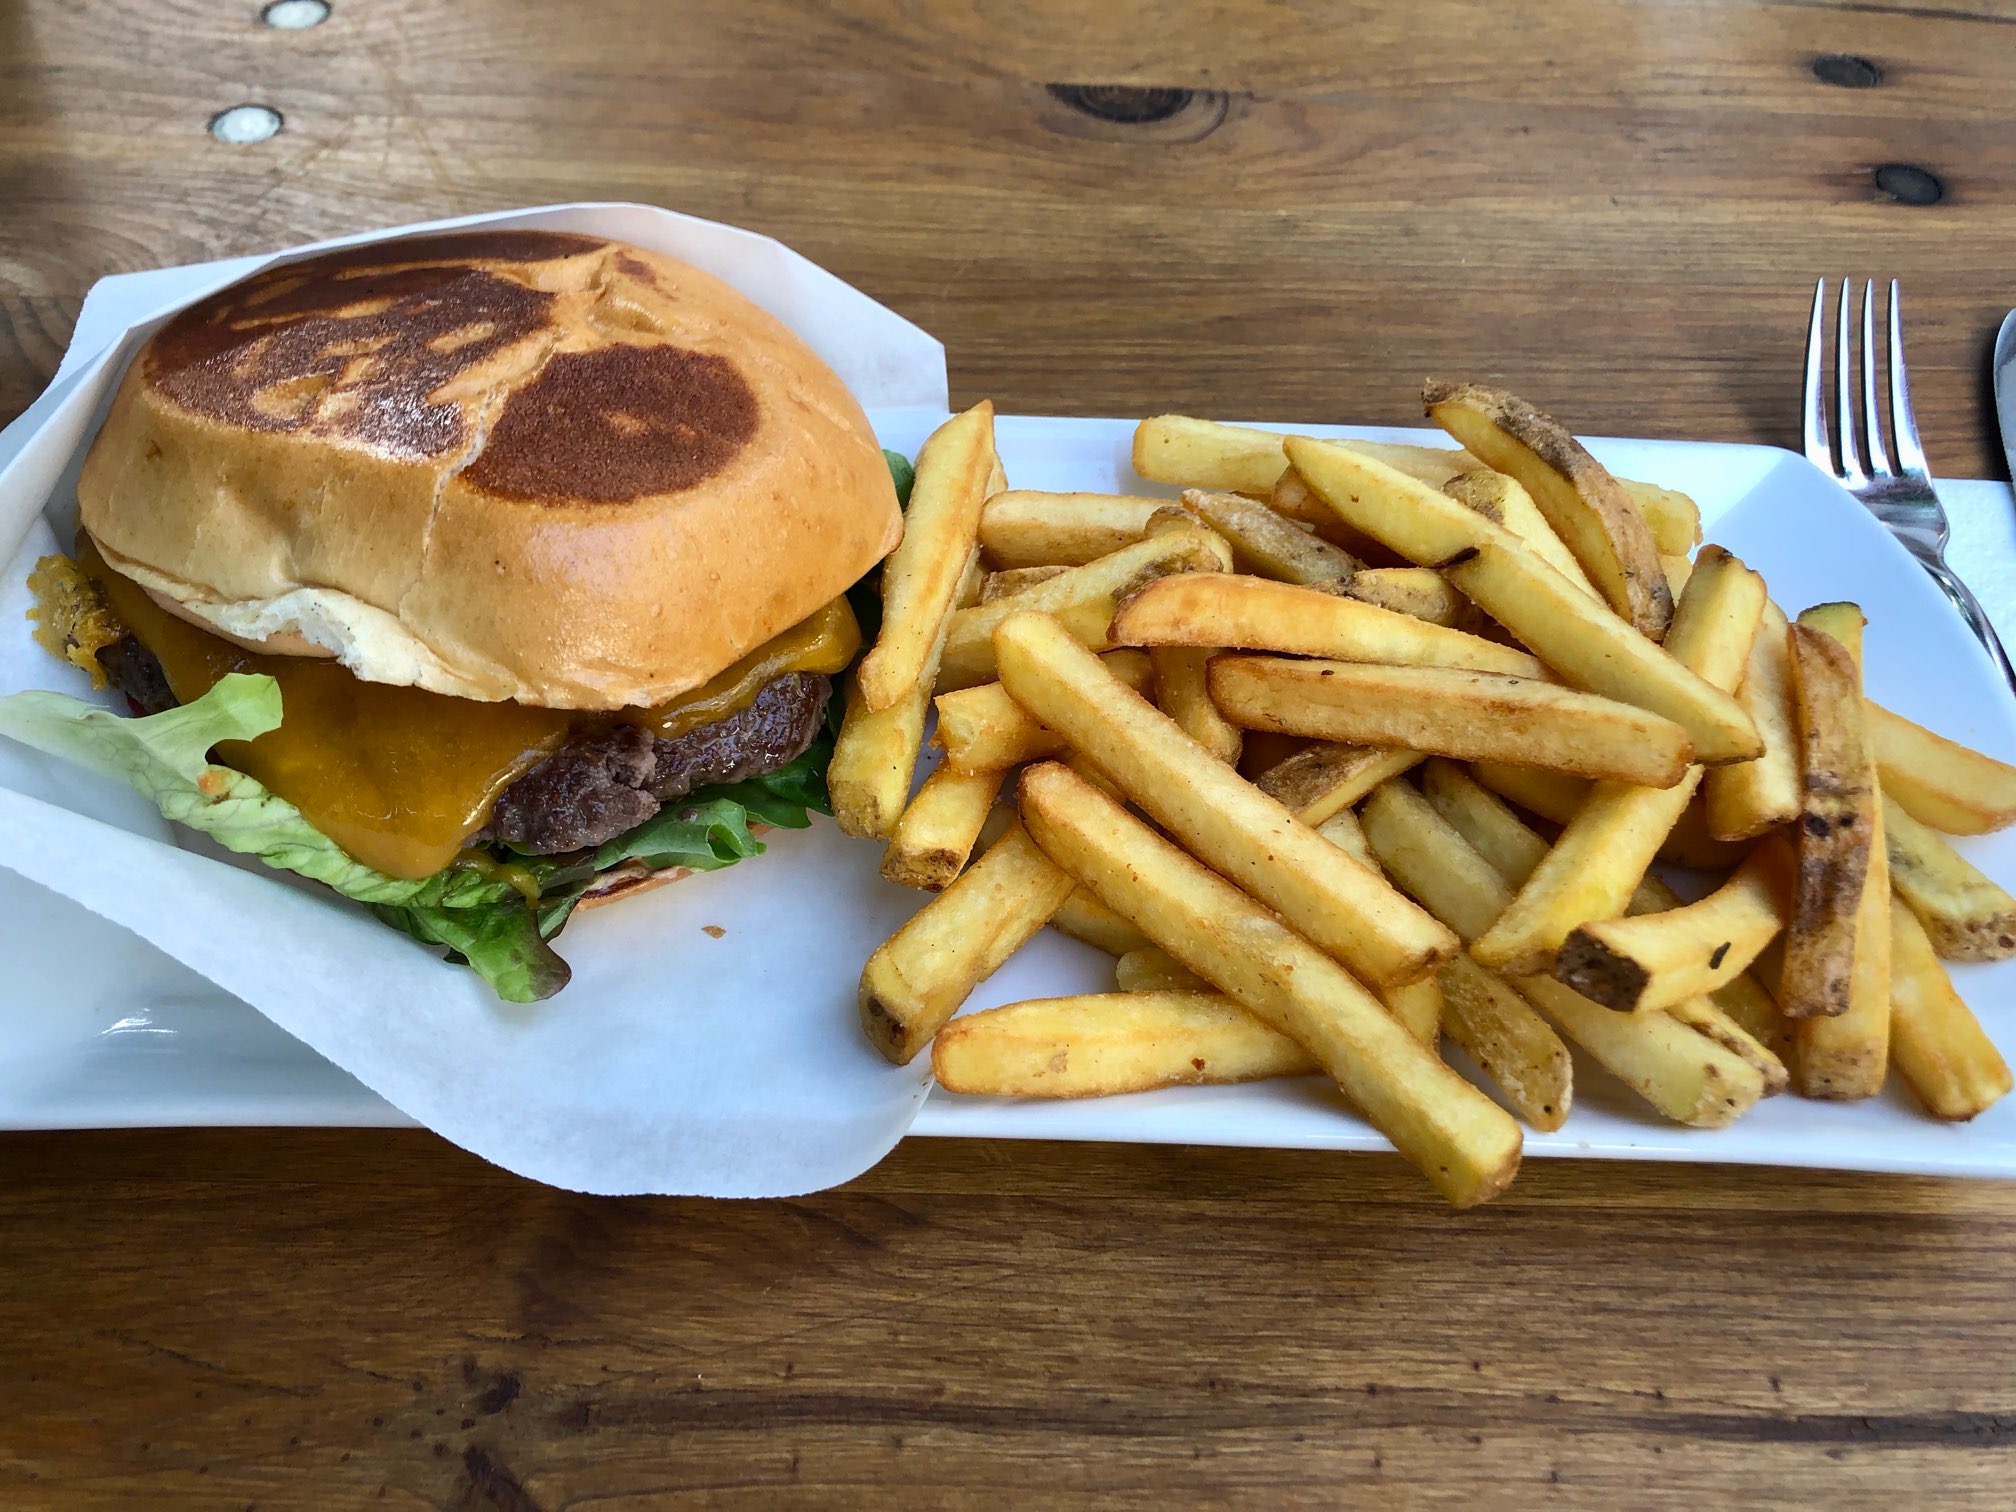 burger 8, fries 4 
neu - silverware!